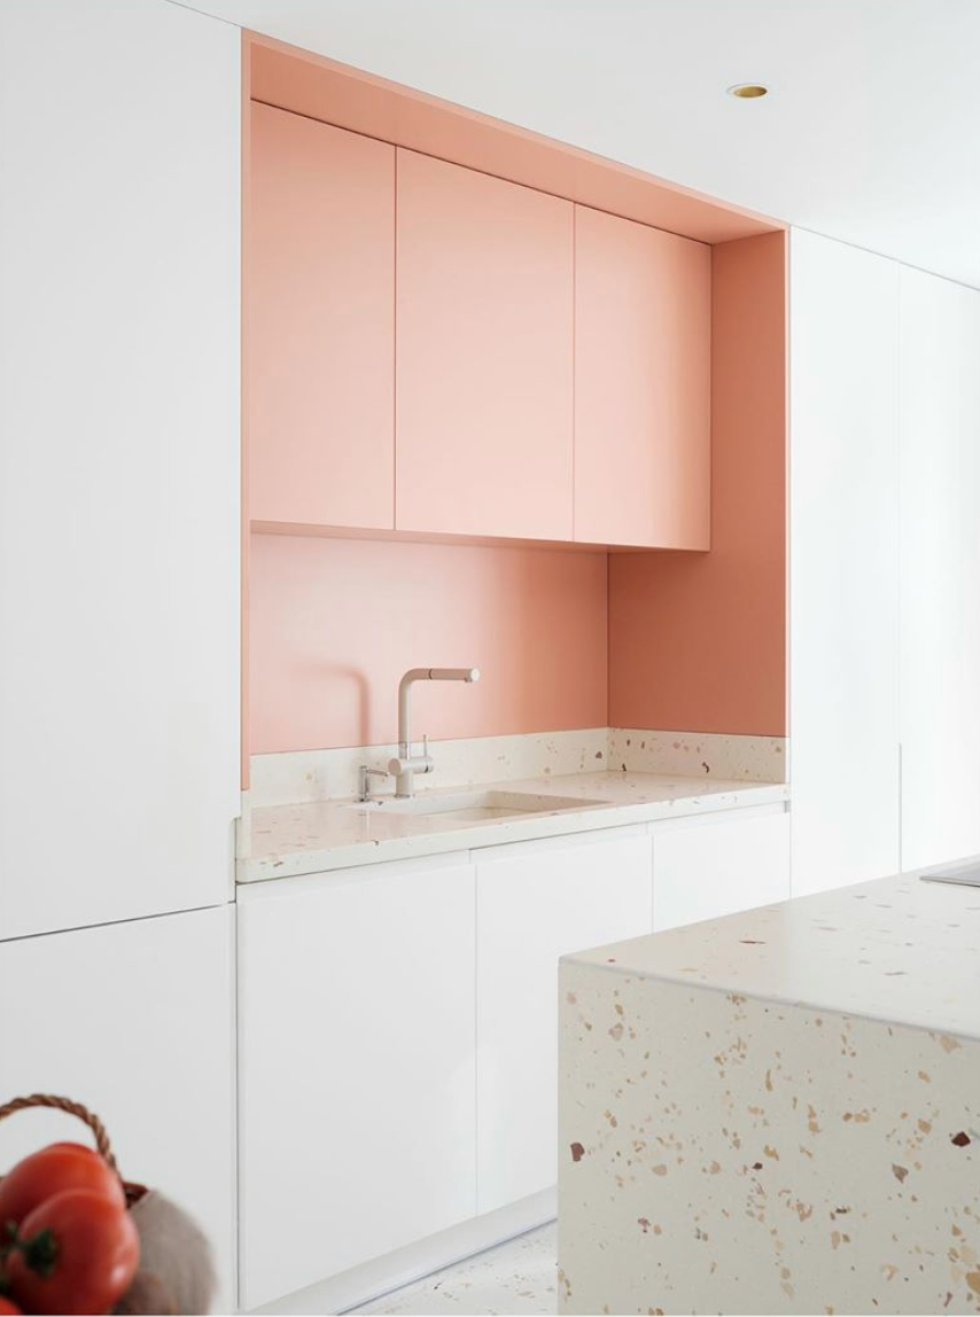 Zweifarbige Küche weiß & rosa, Blenden in verschiedenen Farben